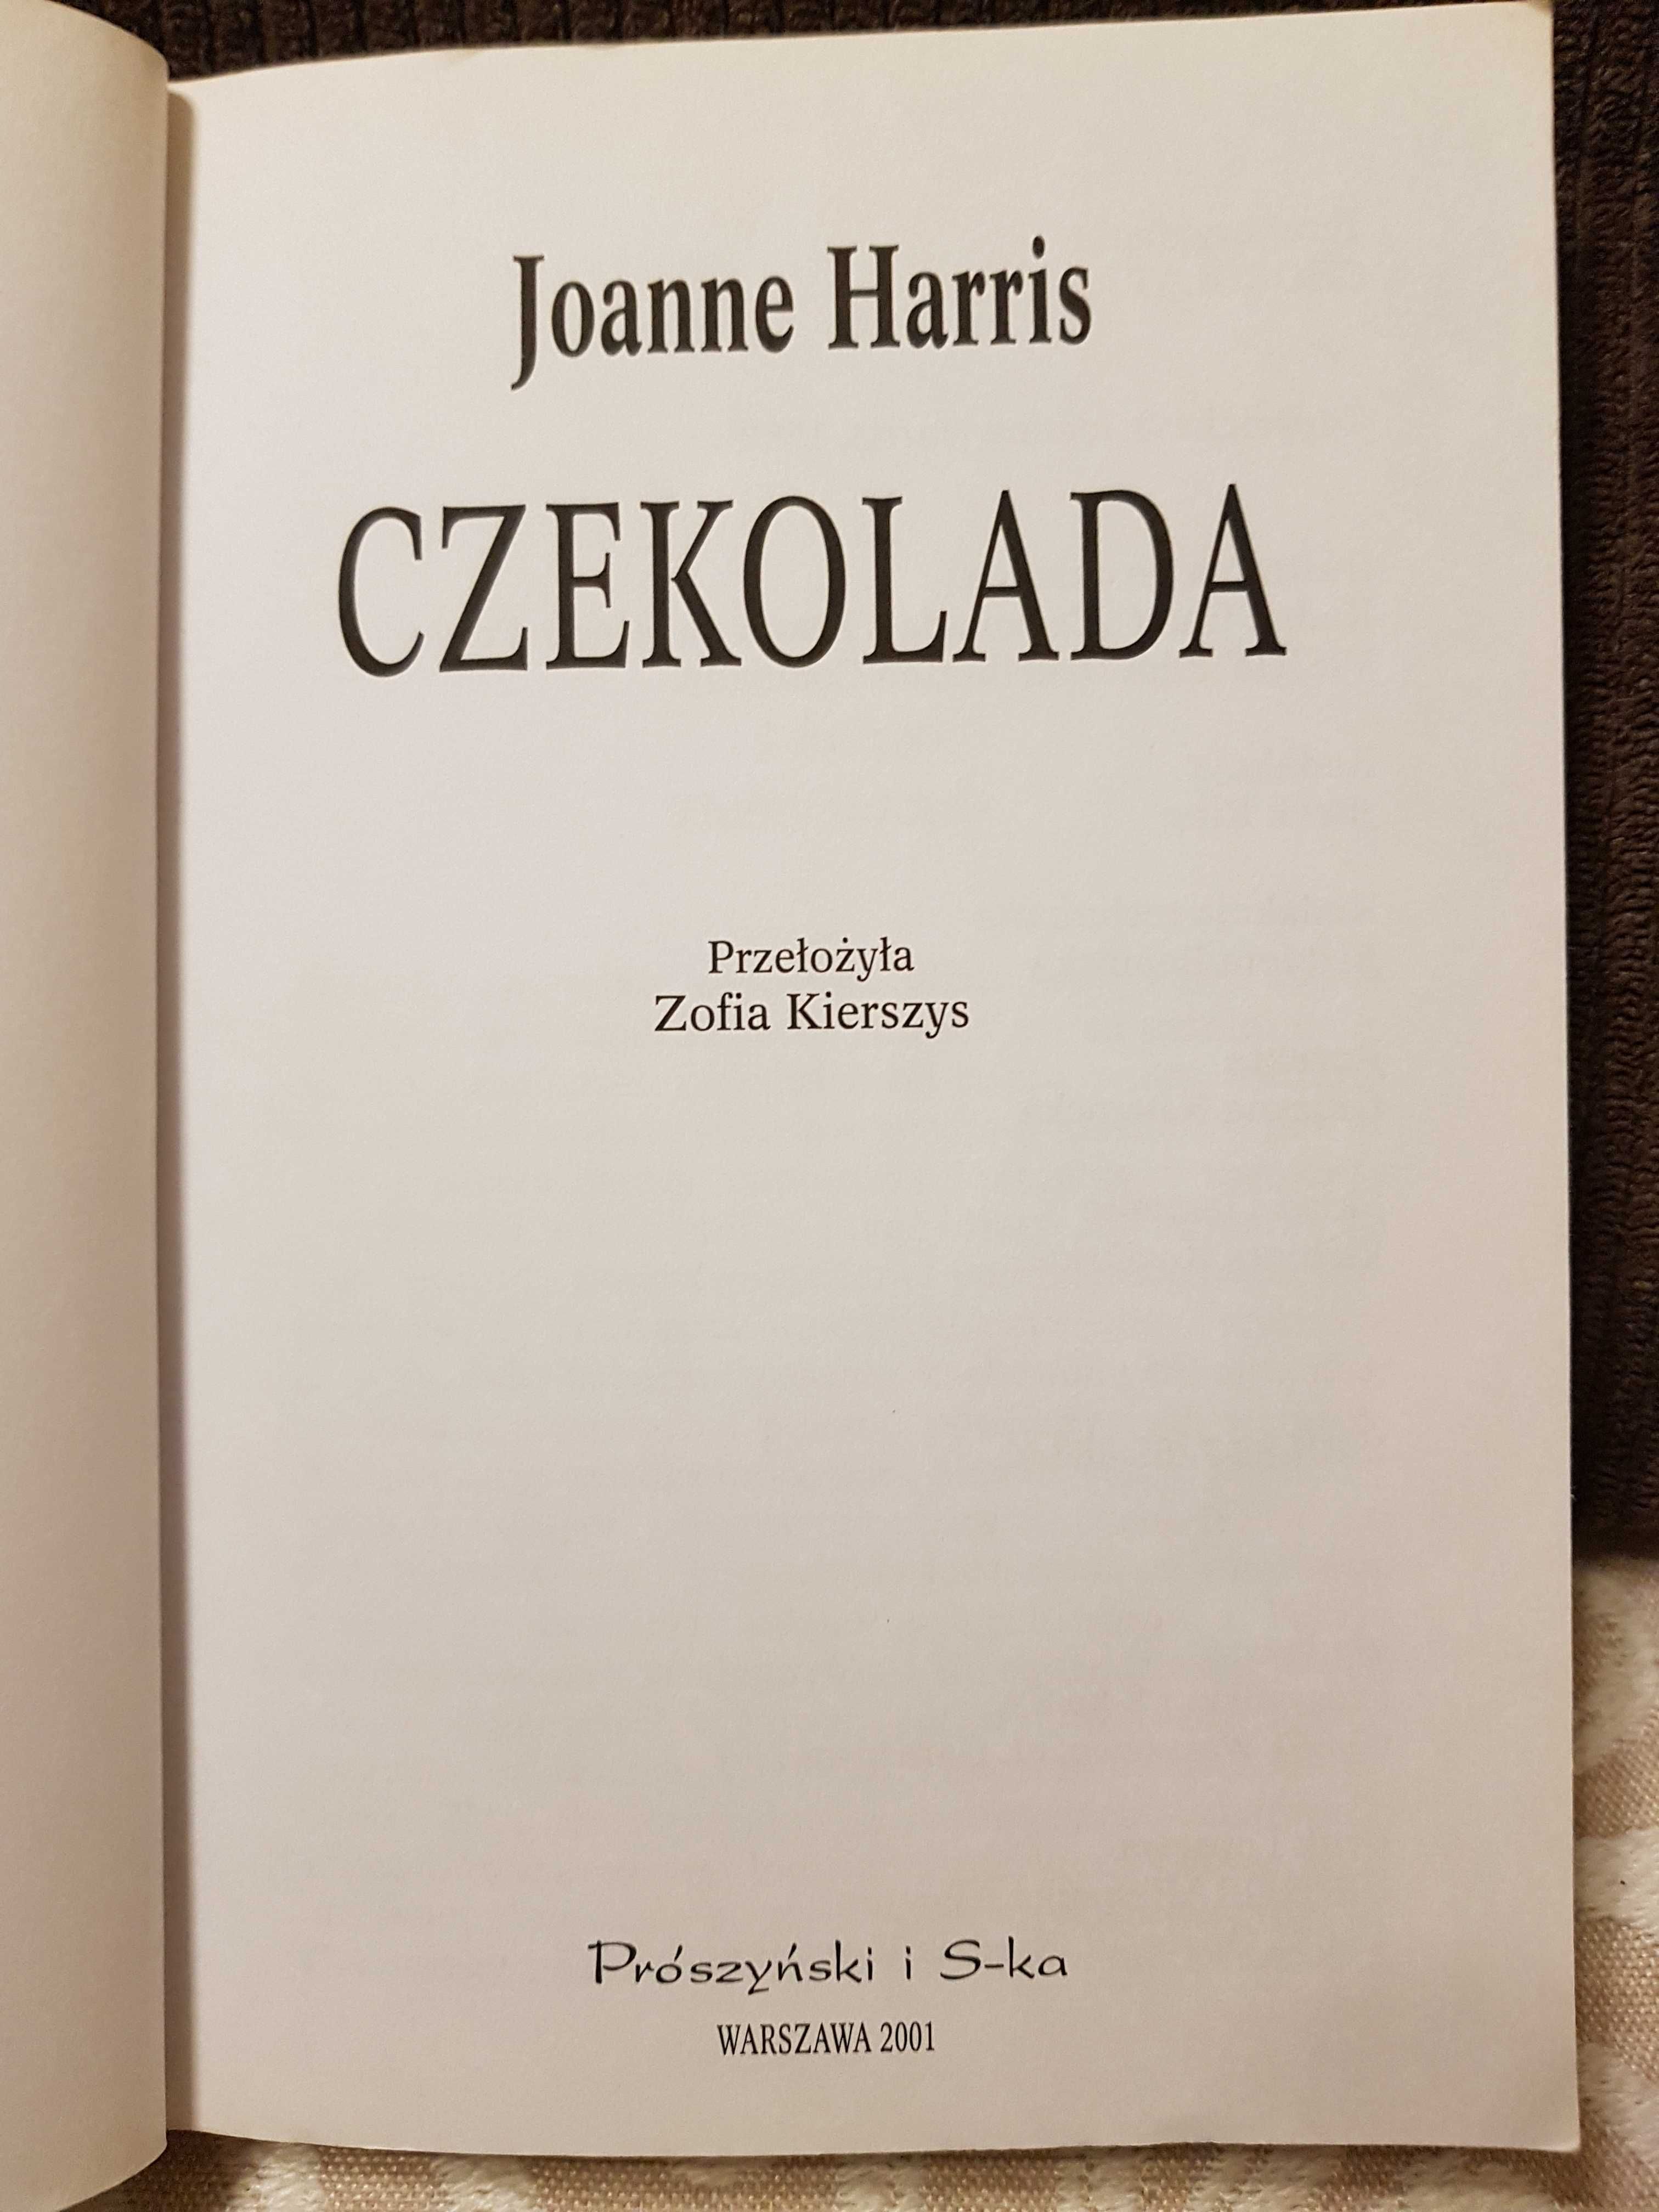 Sprzedam książkę "Czekolada" Joanne Harris.